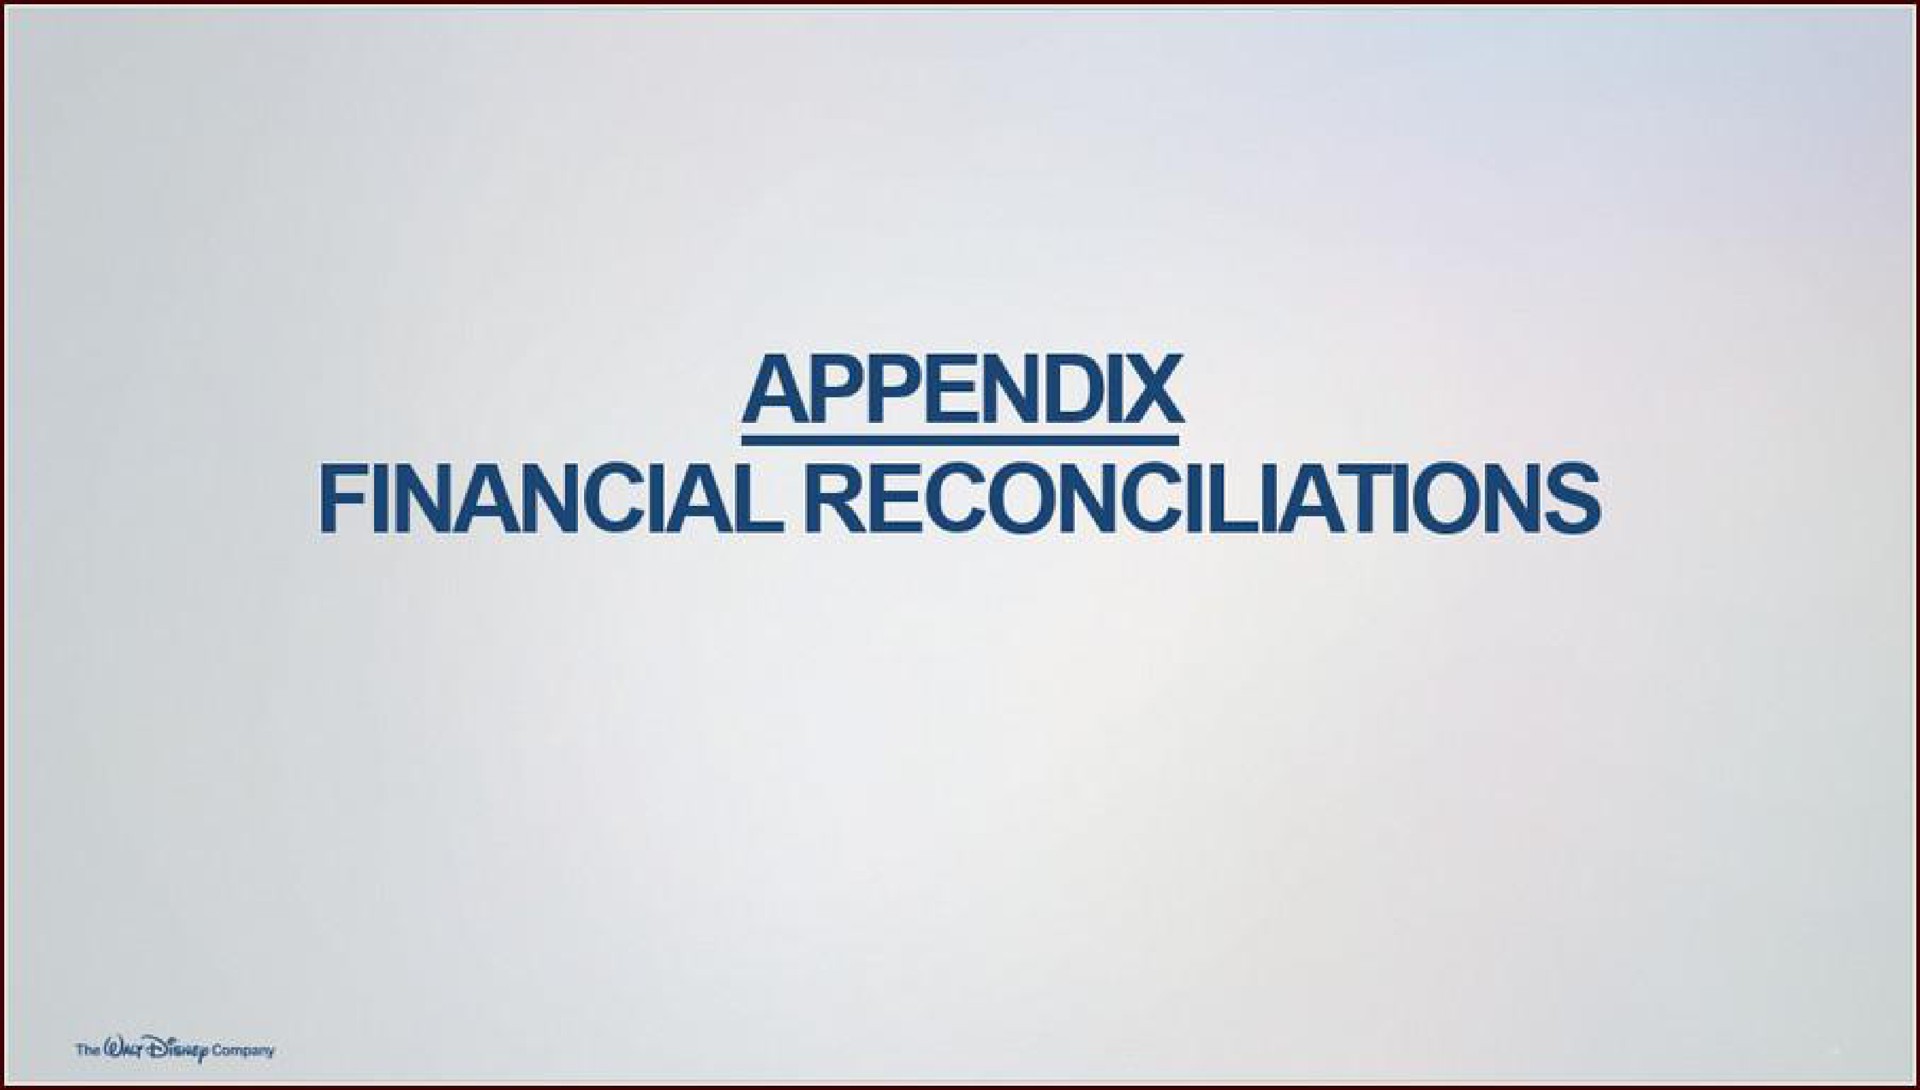 appendix financial reconciliations | Disney